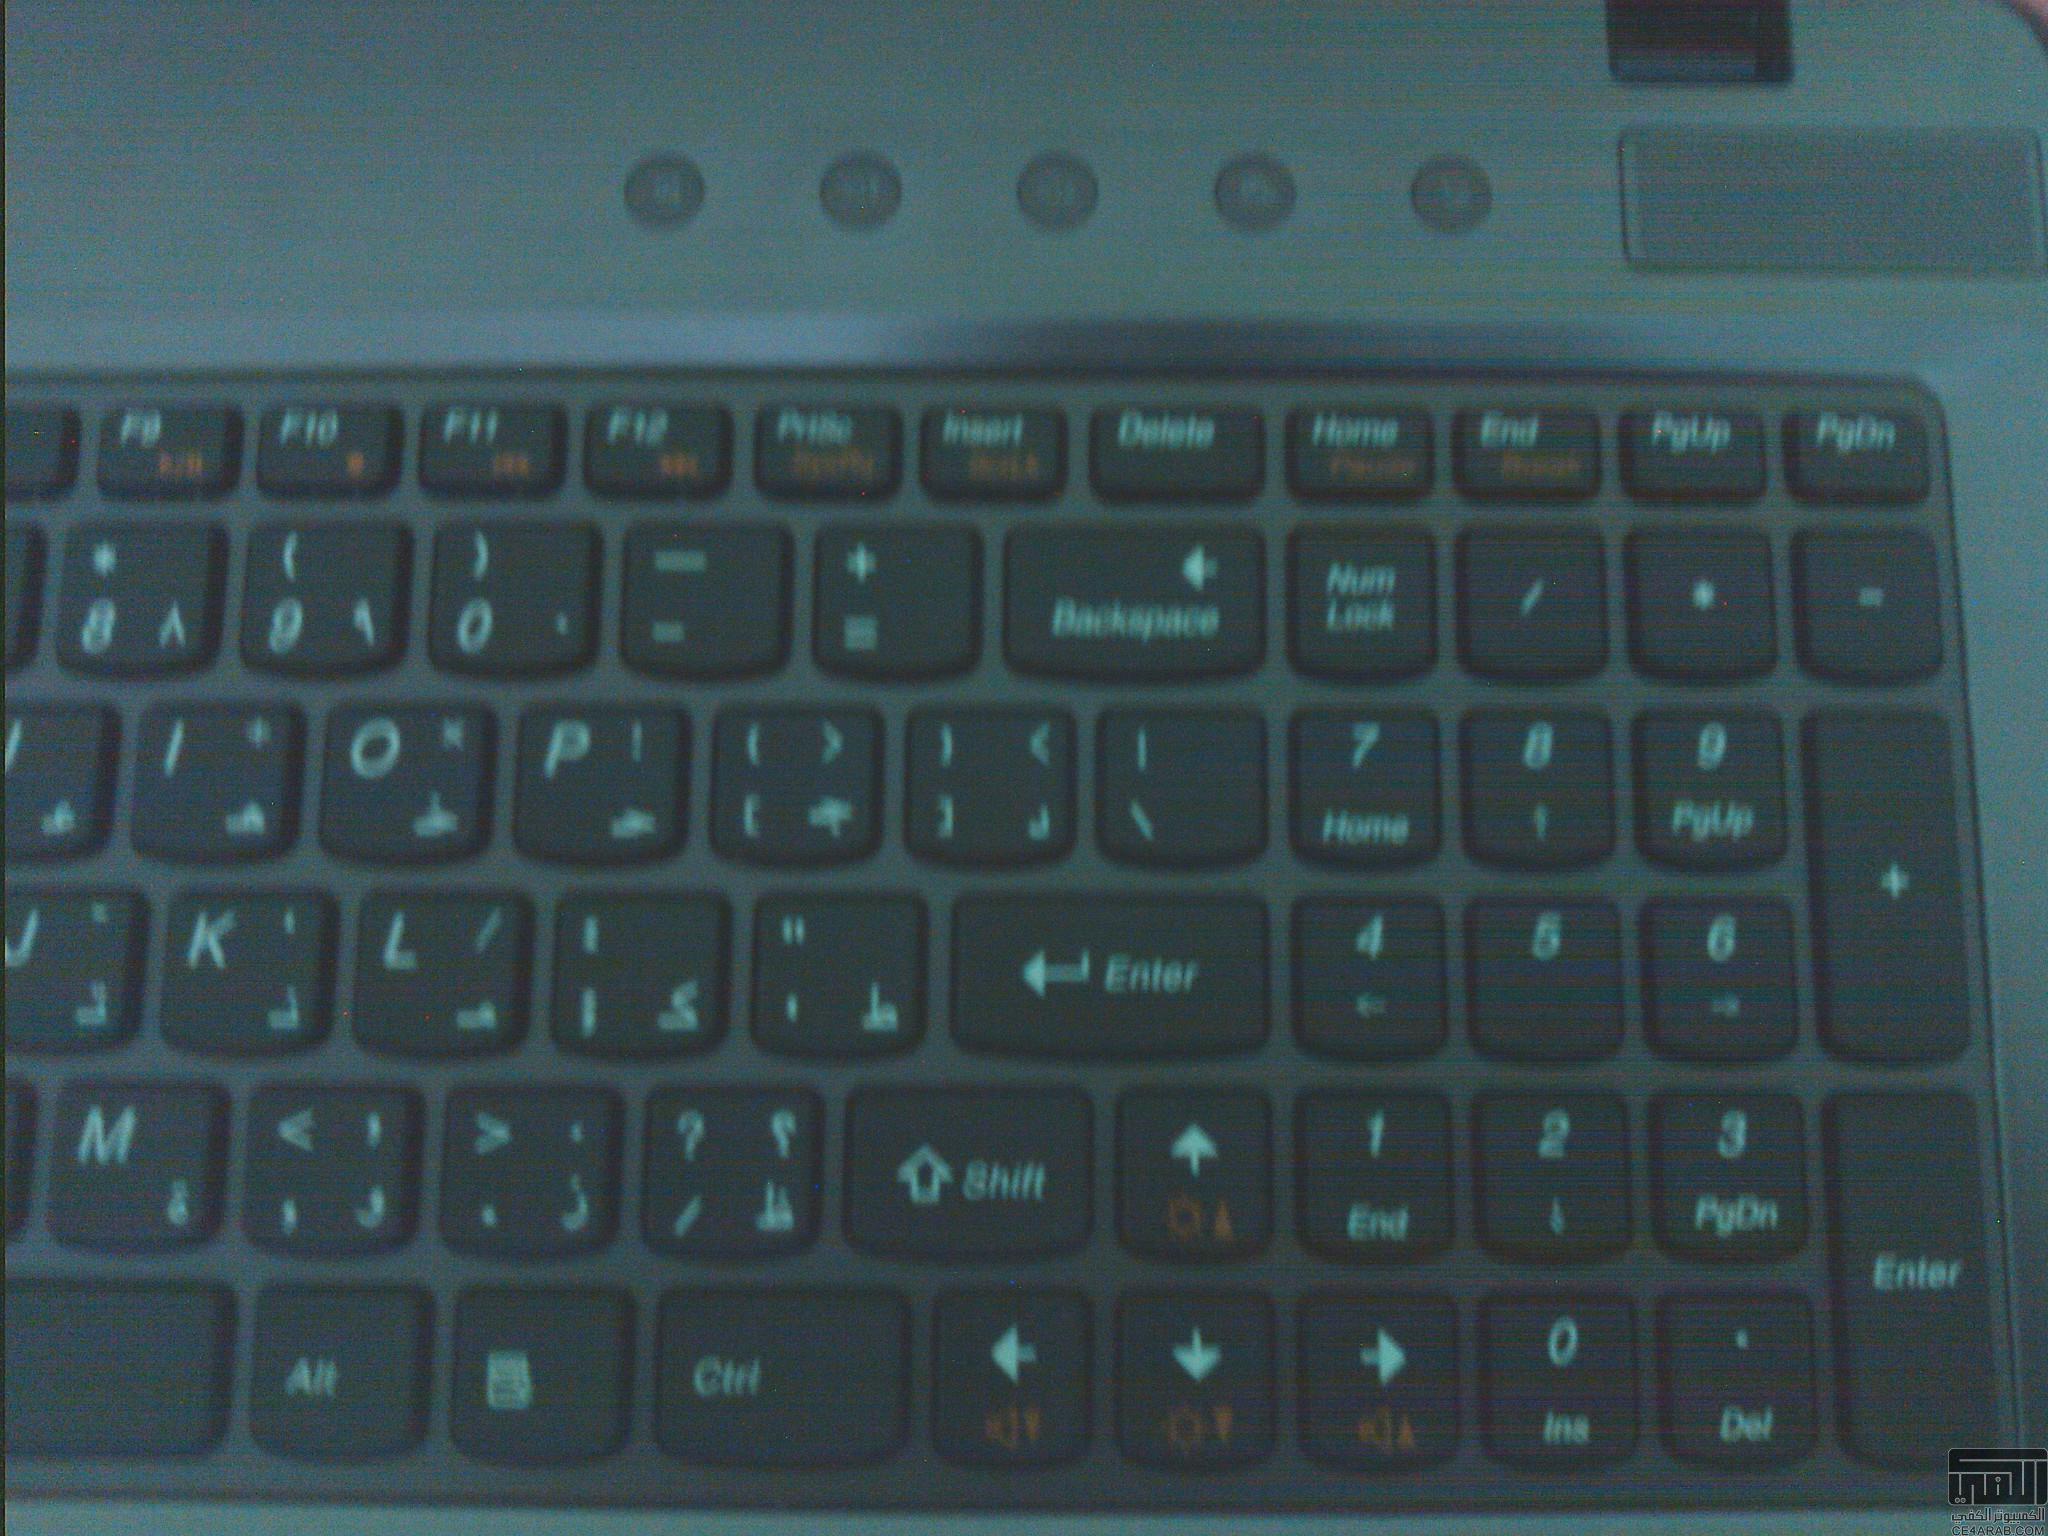 للجادين في مصر Lenovo Z570, I5,Full KeyBoard,Metal,Windows 7